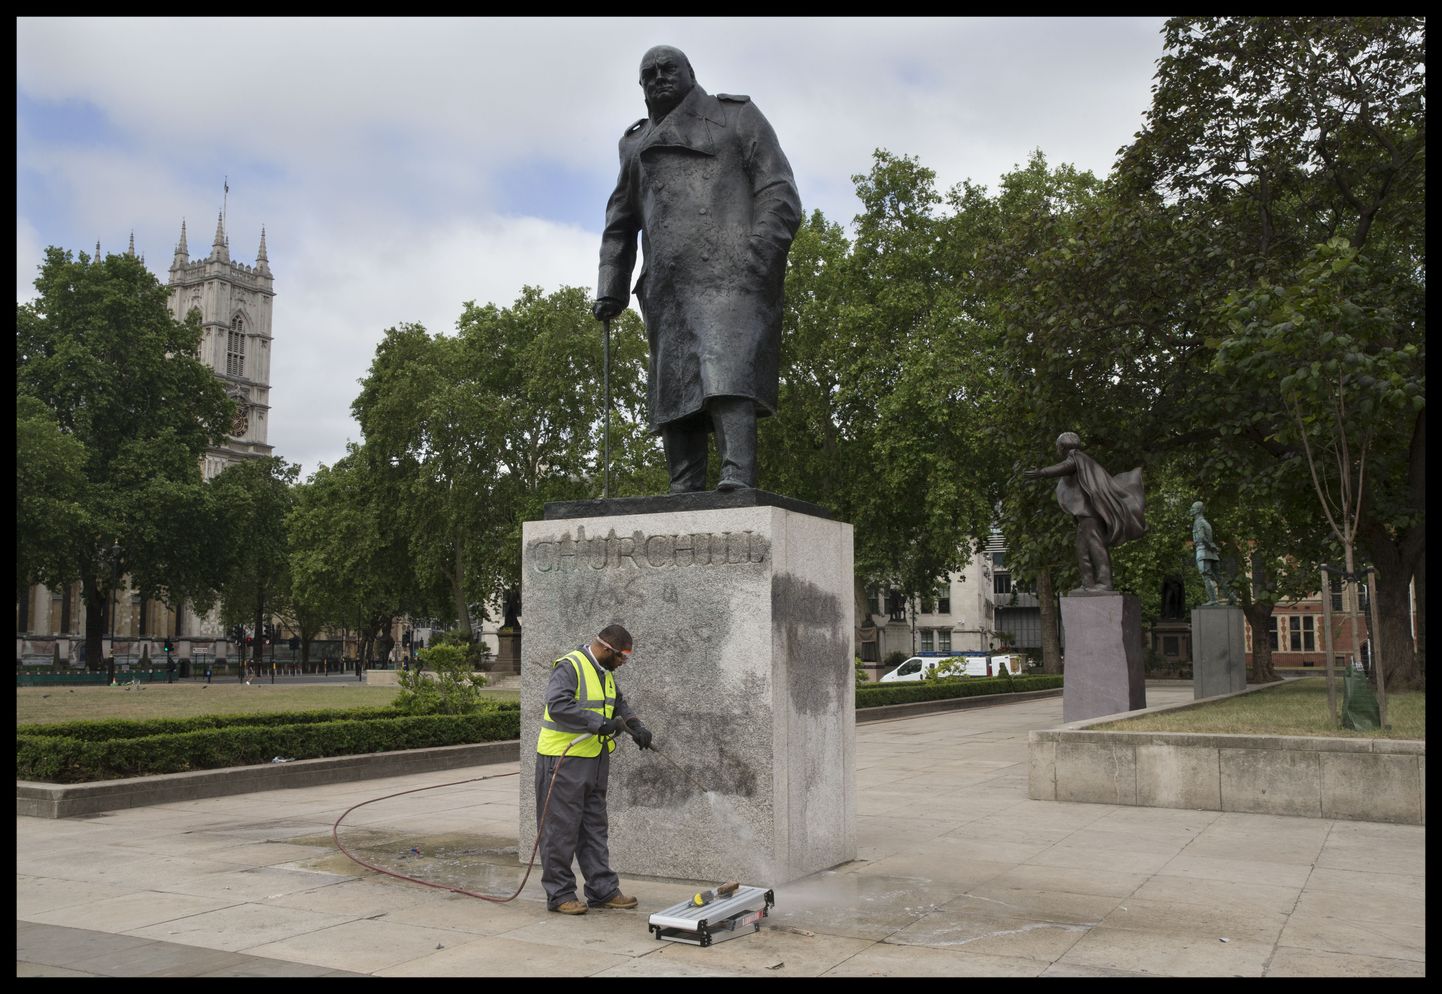 Töötaja puhastab Londoni rassismivastasel meeleavaldusel soditud Winston Churchilli monumenti.